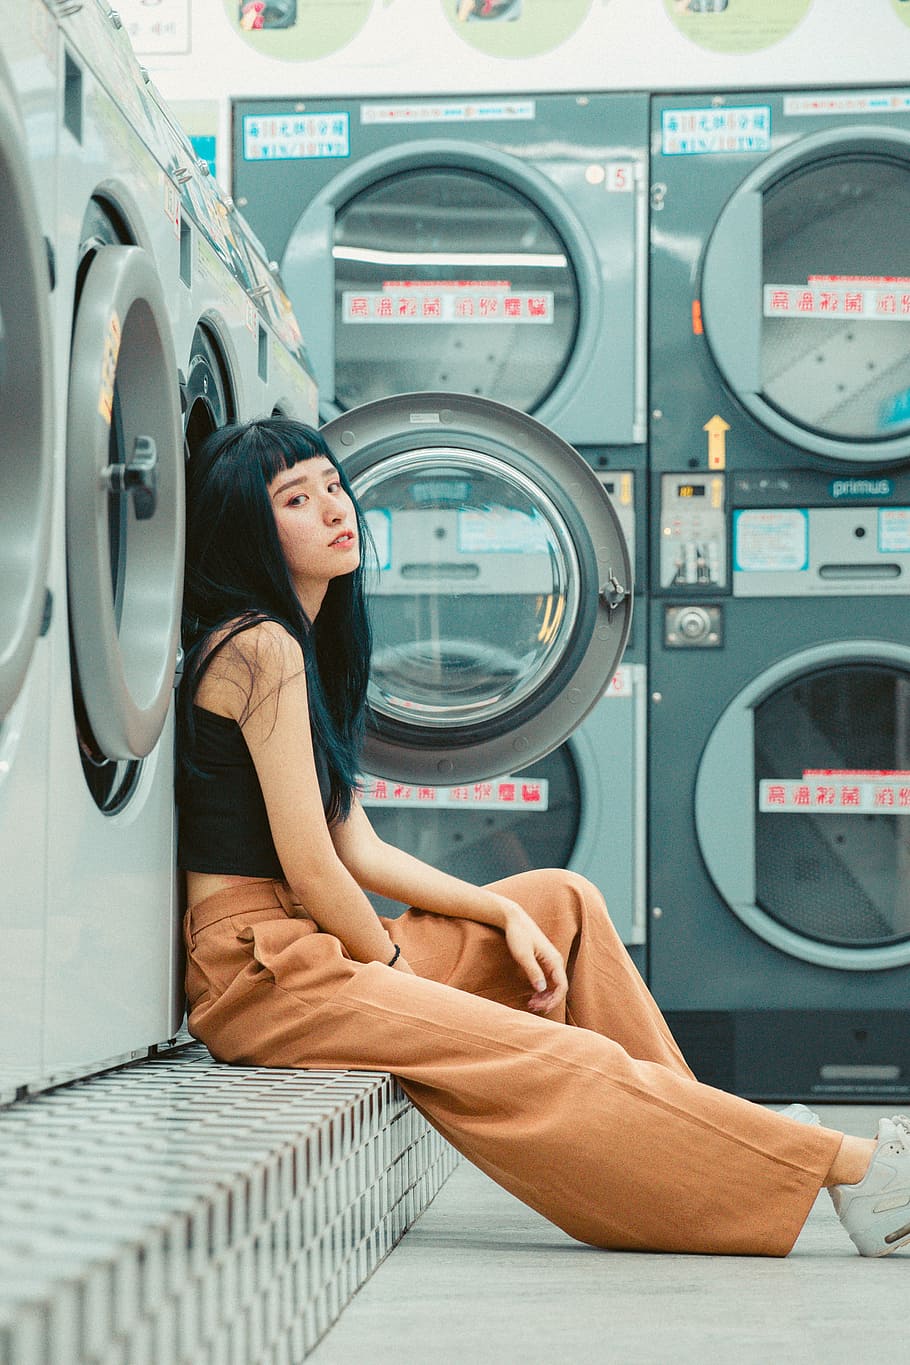 woman, female, washing machine, laundromat, launderette, laundry